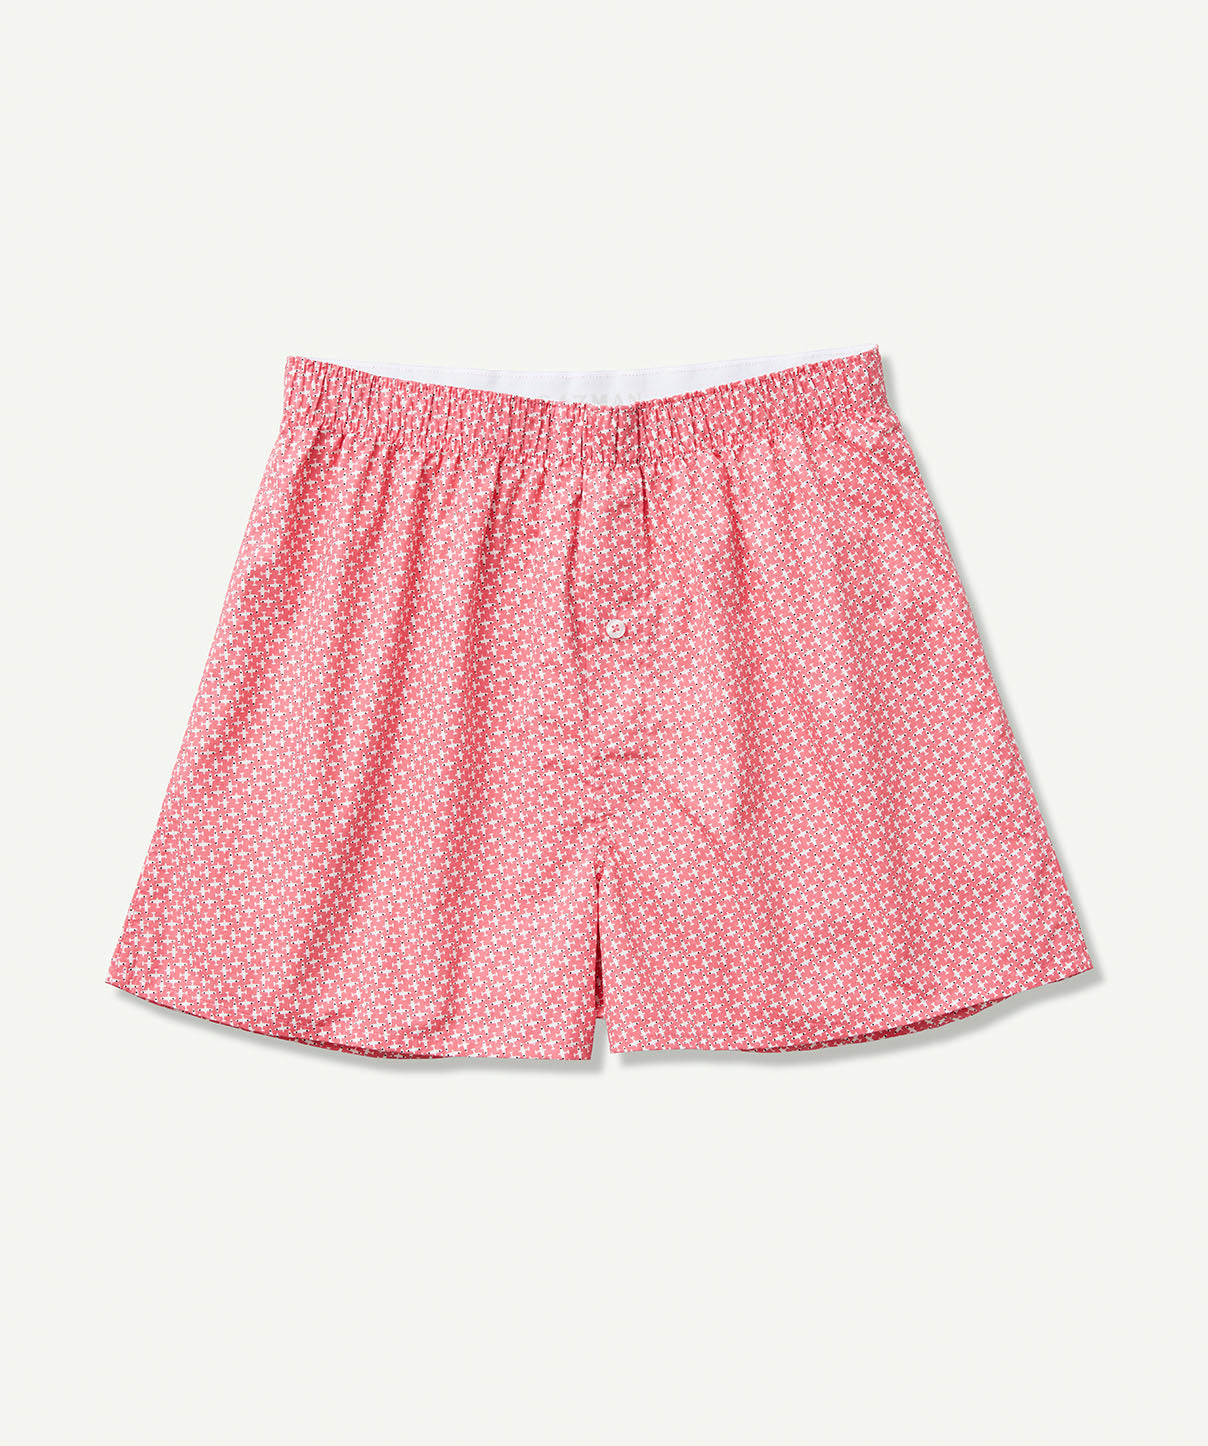 Plane Print Boxers - Pink - Underwear - GAZMAN